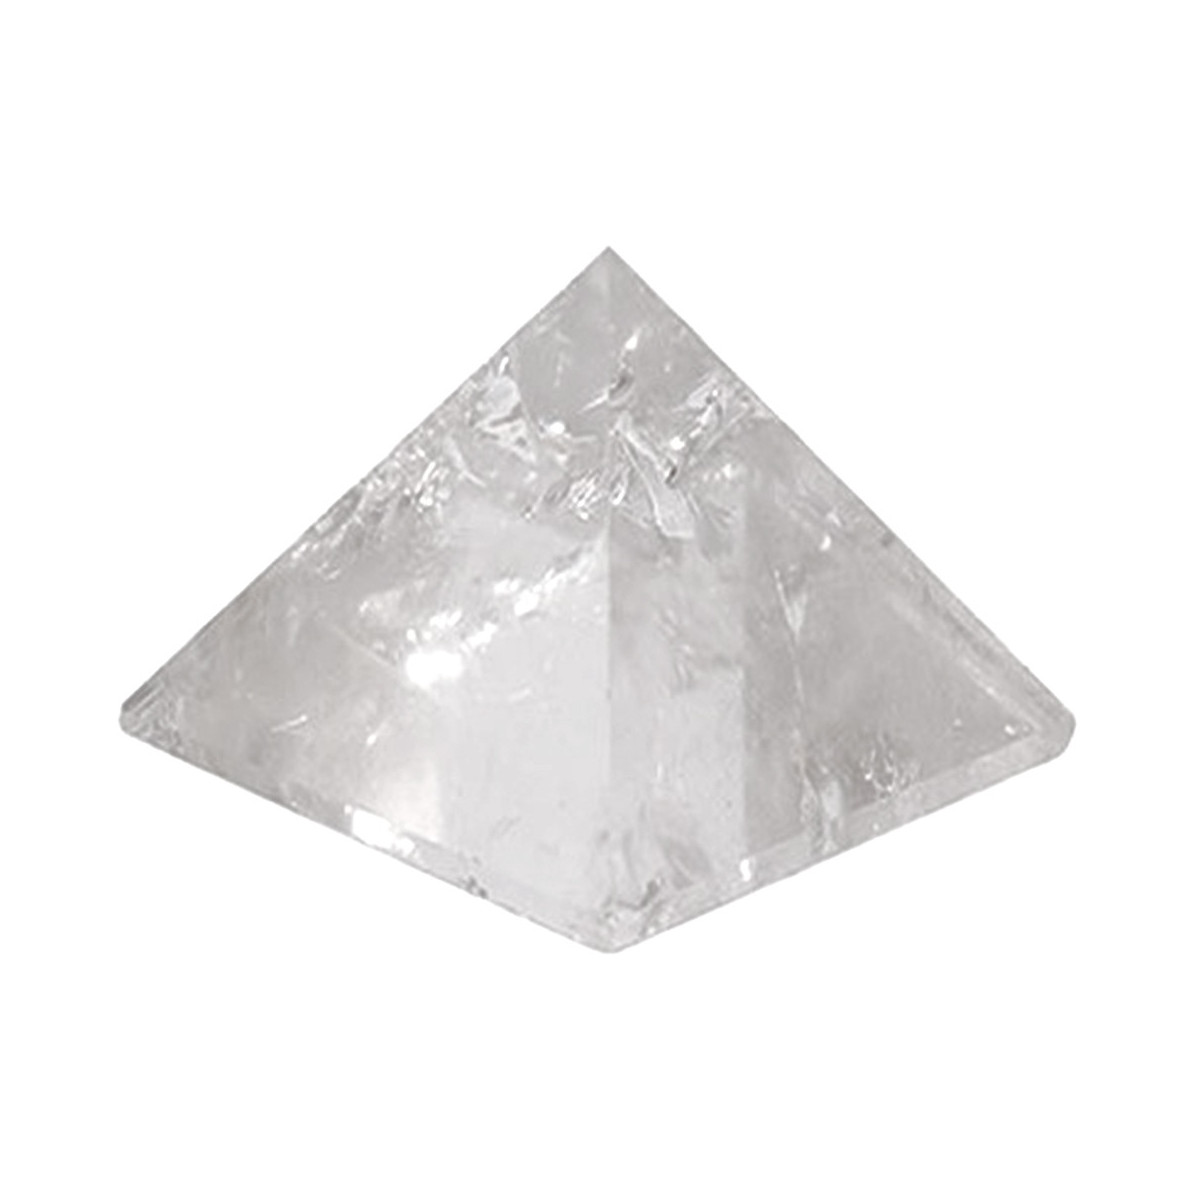 Pyramide Cailloux de Cristal de roche 50mm - Cristaux Feng Shui